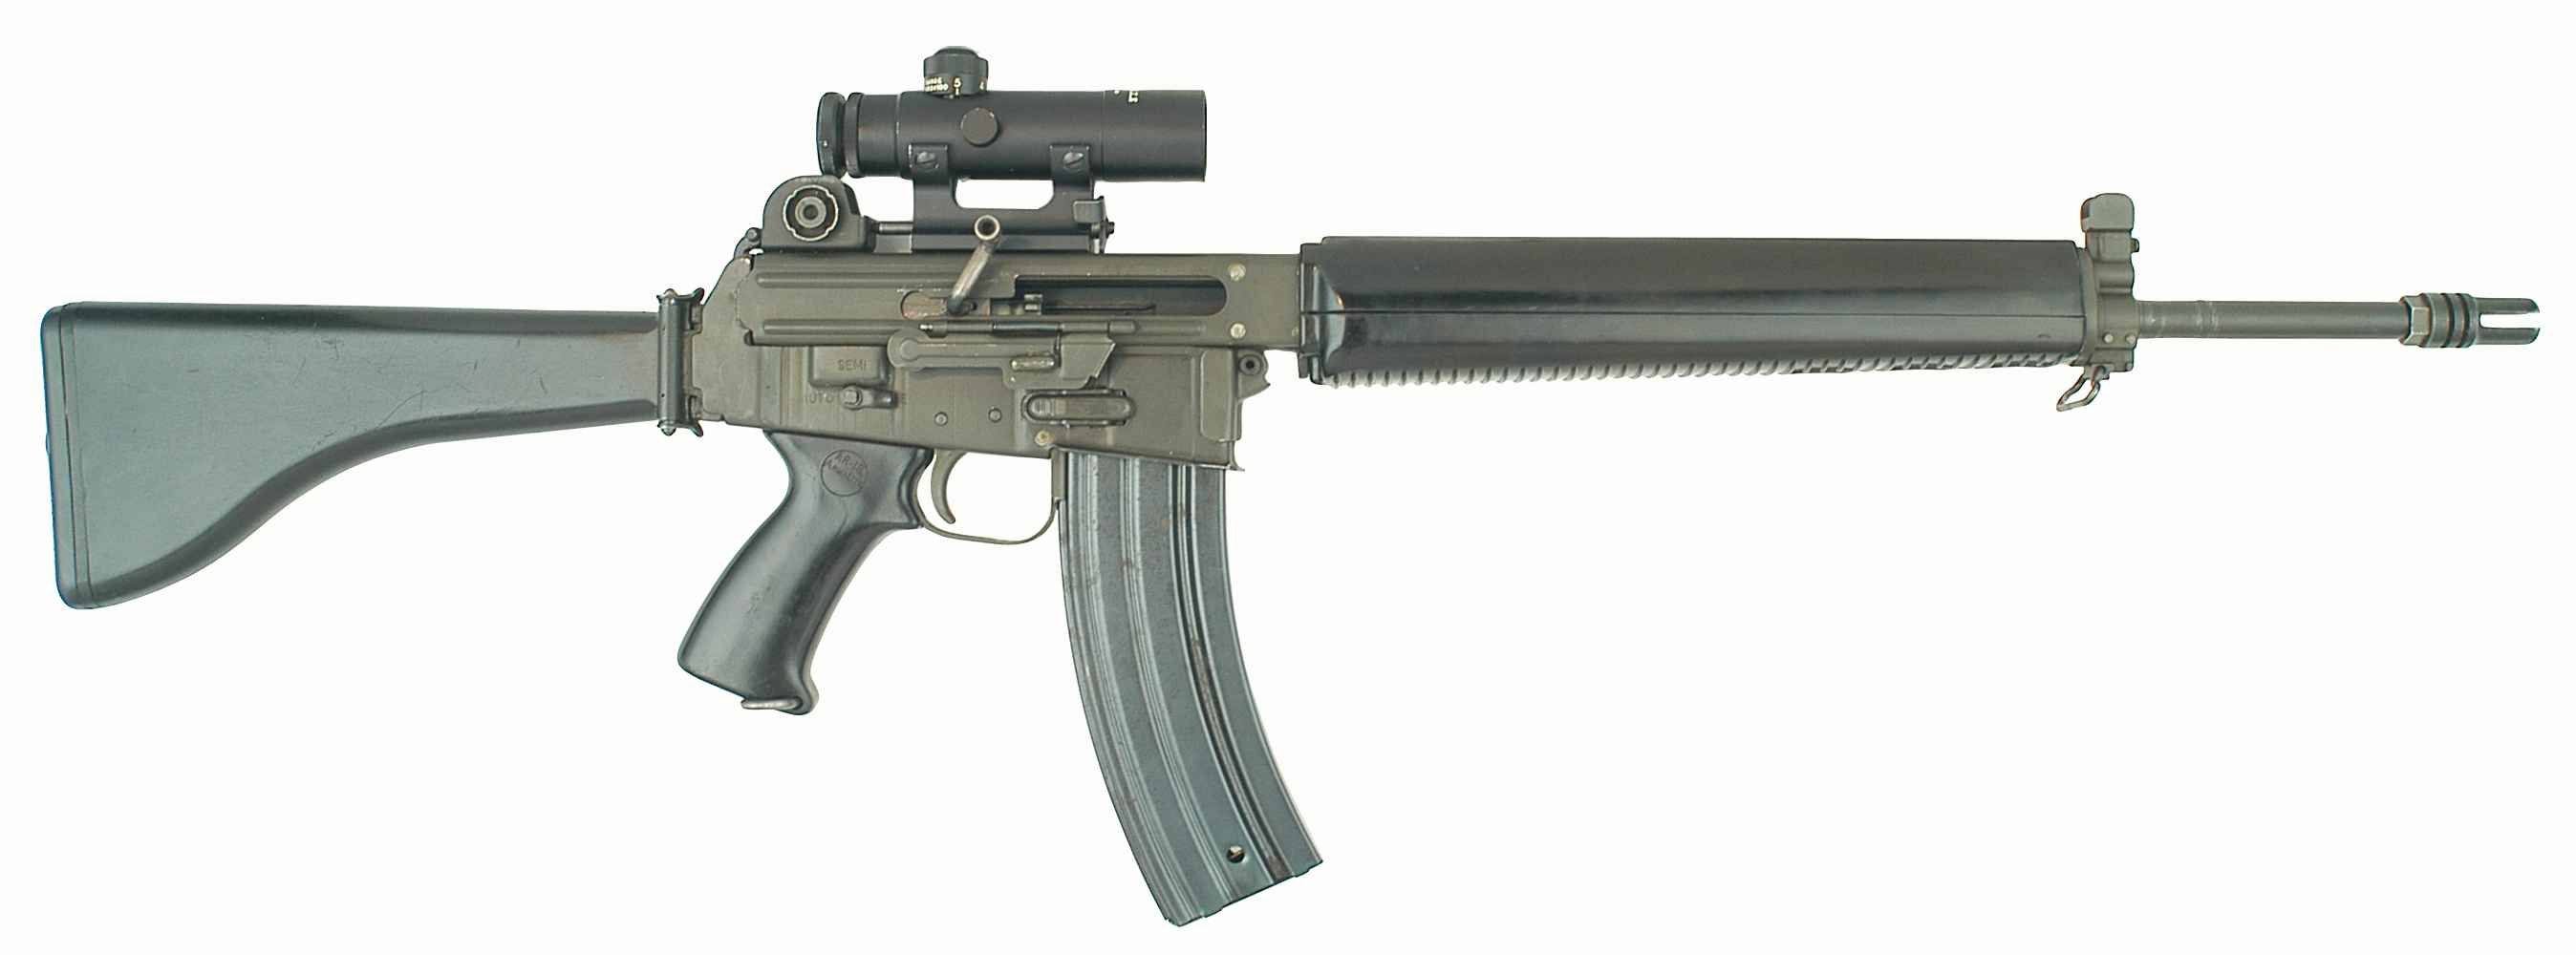 Маленька Армелайт AR-18